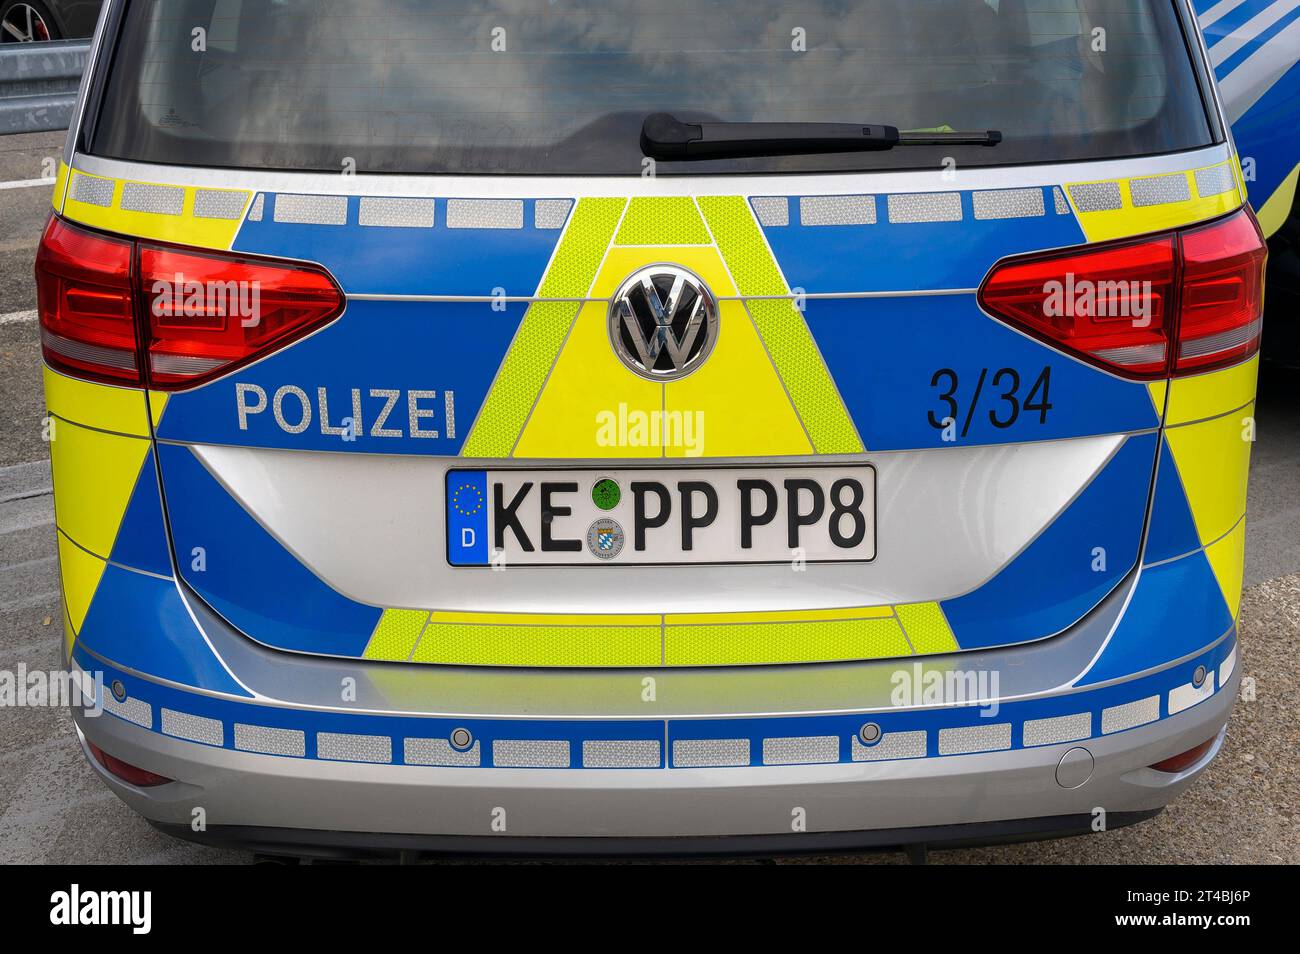 Polizeiauto, Rückansicht, Allgaeu, Bayern, Deutschland Stockfoto